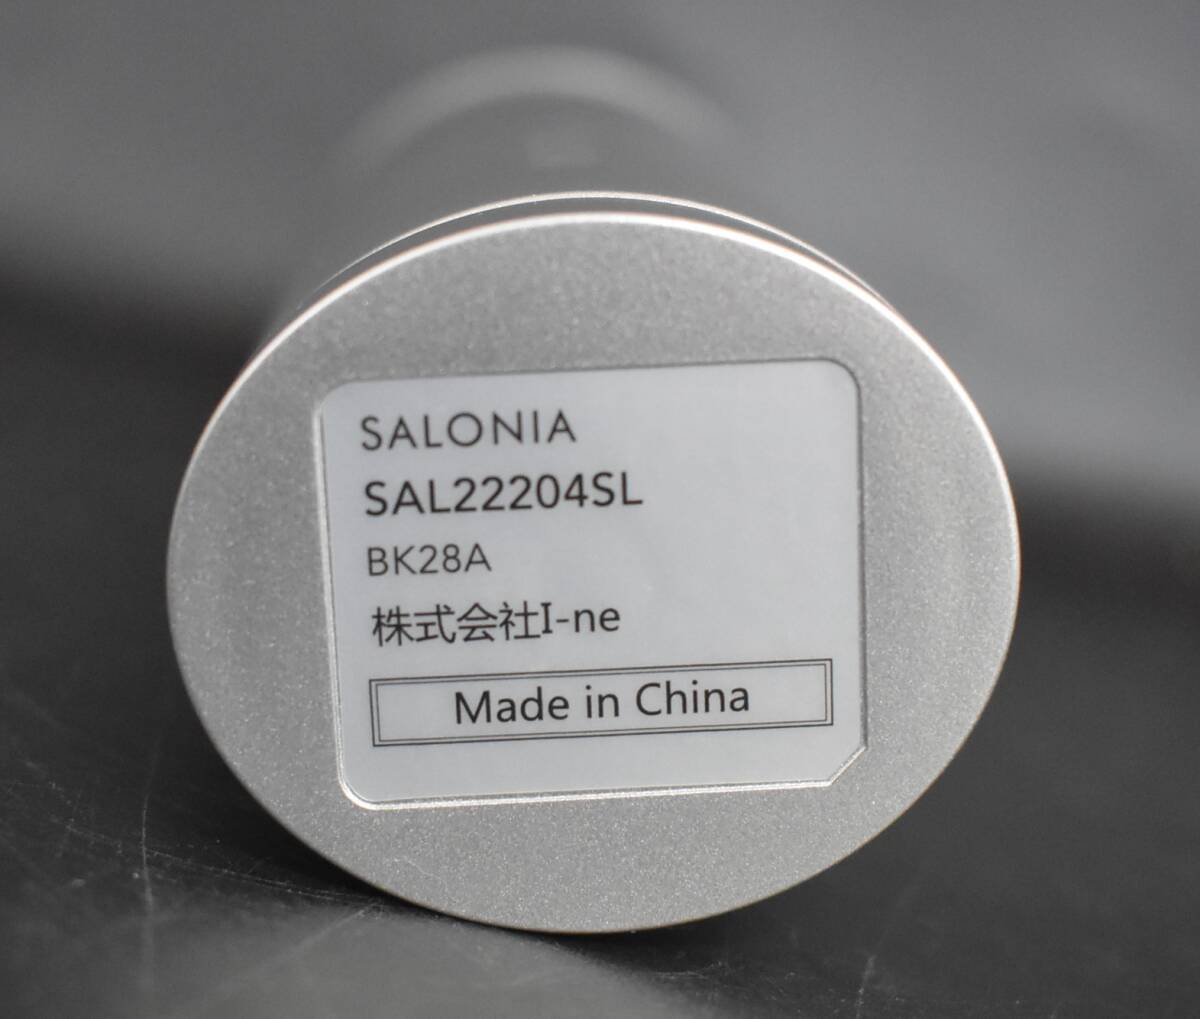 F4-38 SALONIAsaronia aqua пилинг устройство ион лицевой щетка суммировать 2 пункт электризация подтверждено б/у товар красота оборудование хранение товар 